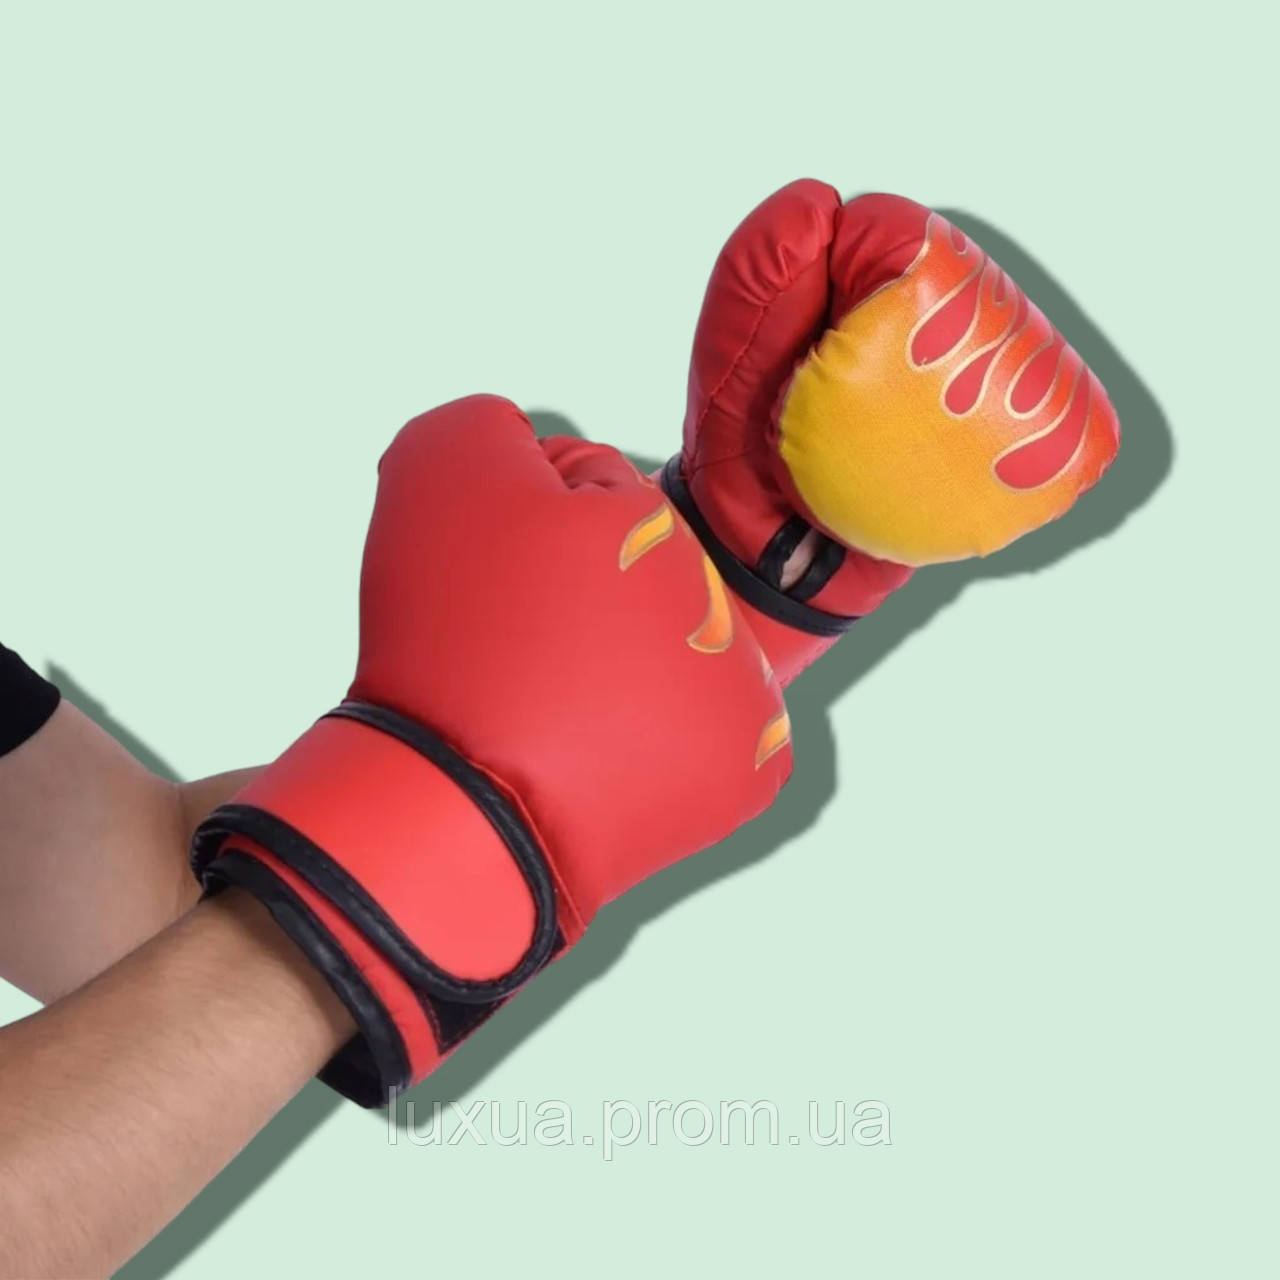 Дитячі боксерські рукавиці. Рукавиці для тренувань з карате. Дихаючі